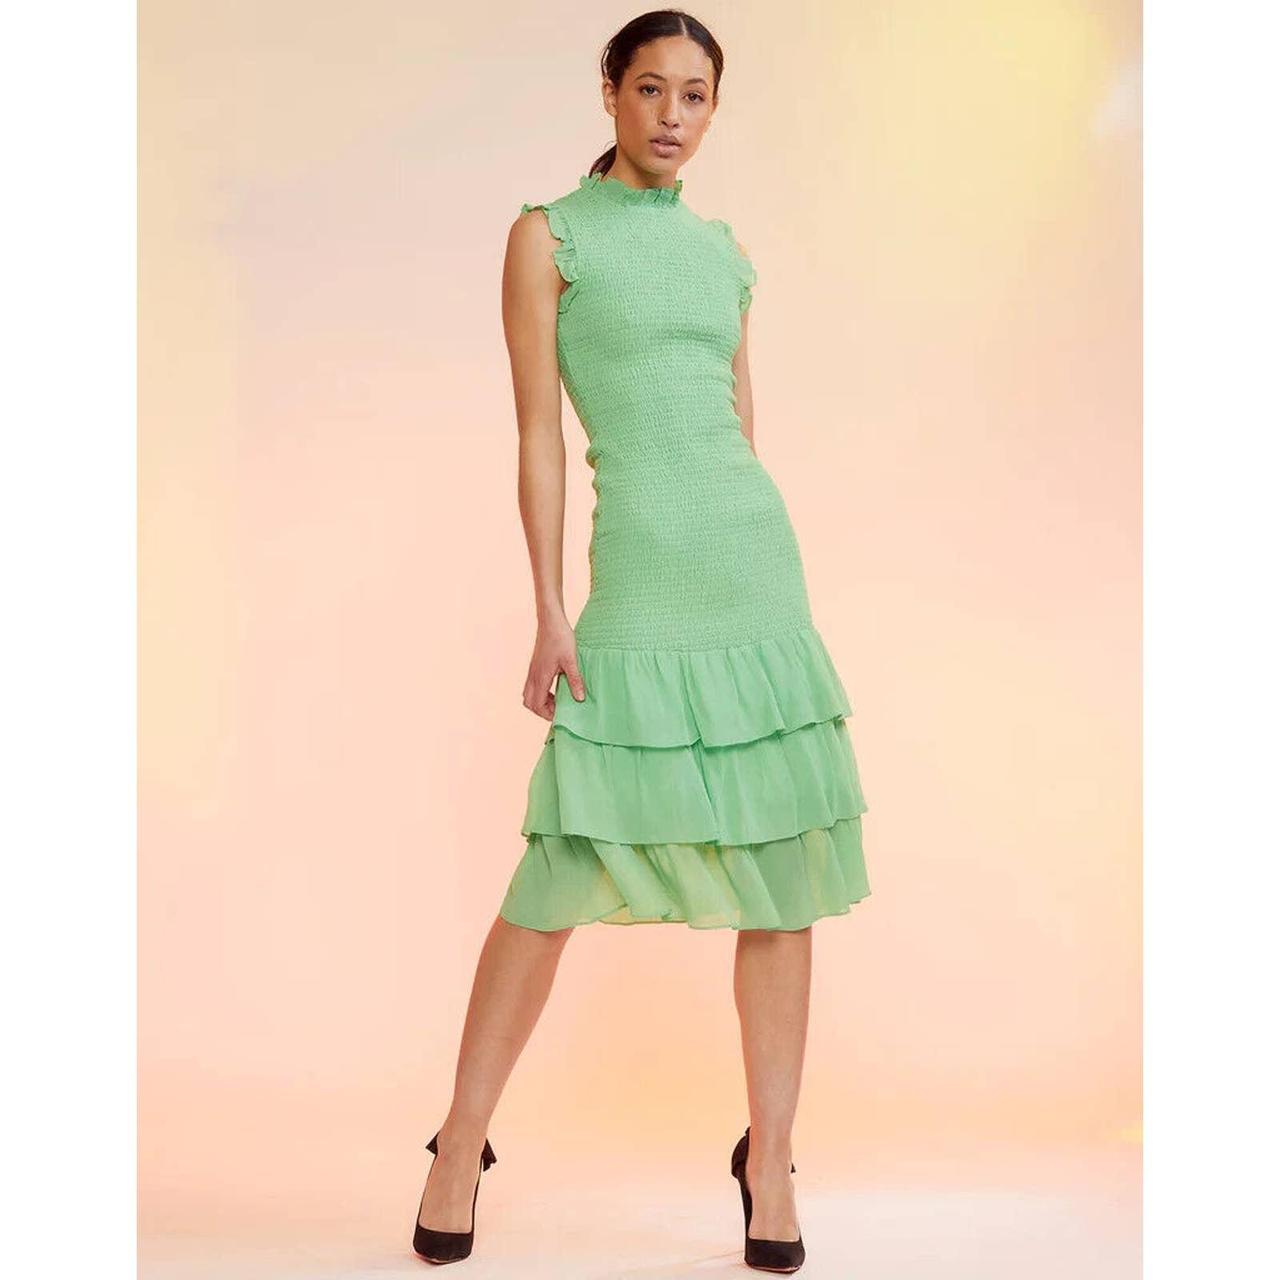 Dolman Sleeve Dance Dress – Cynthia Rowley